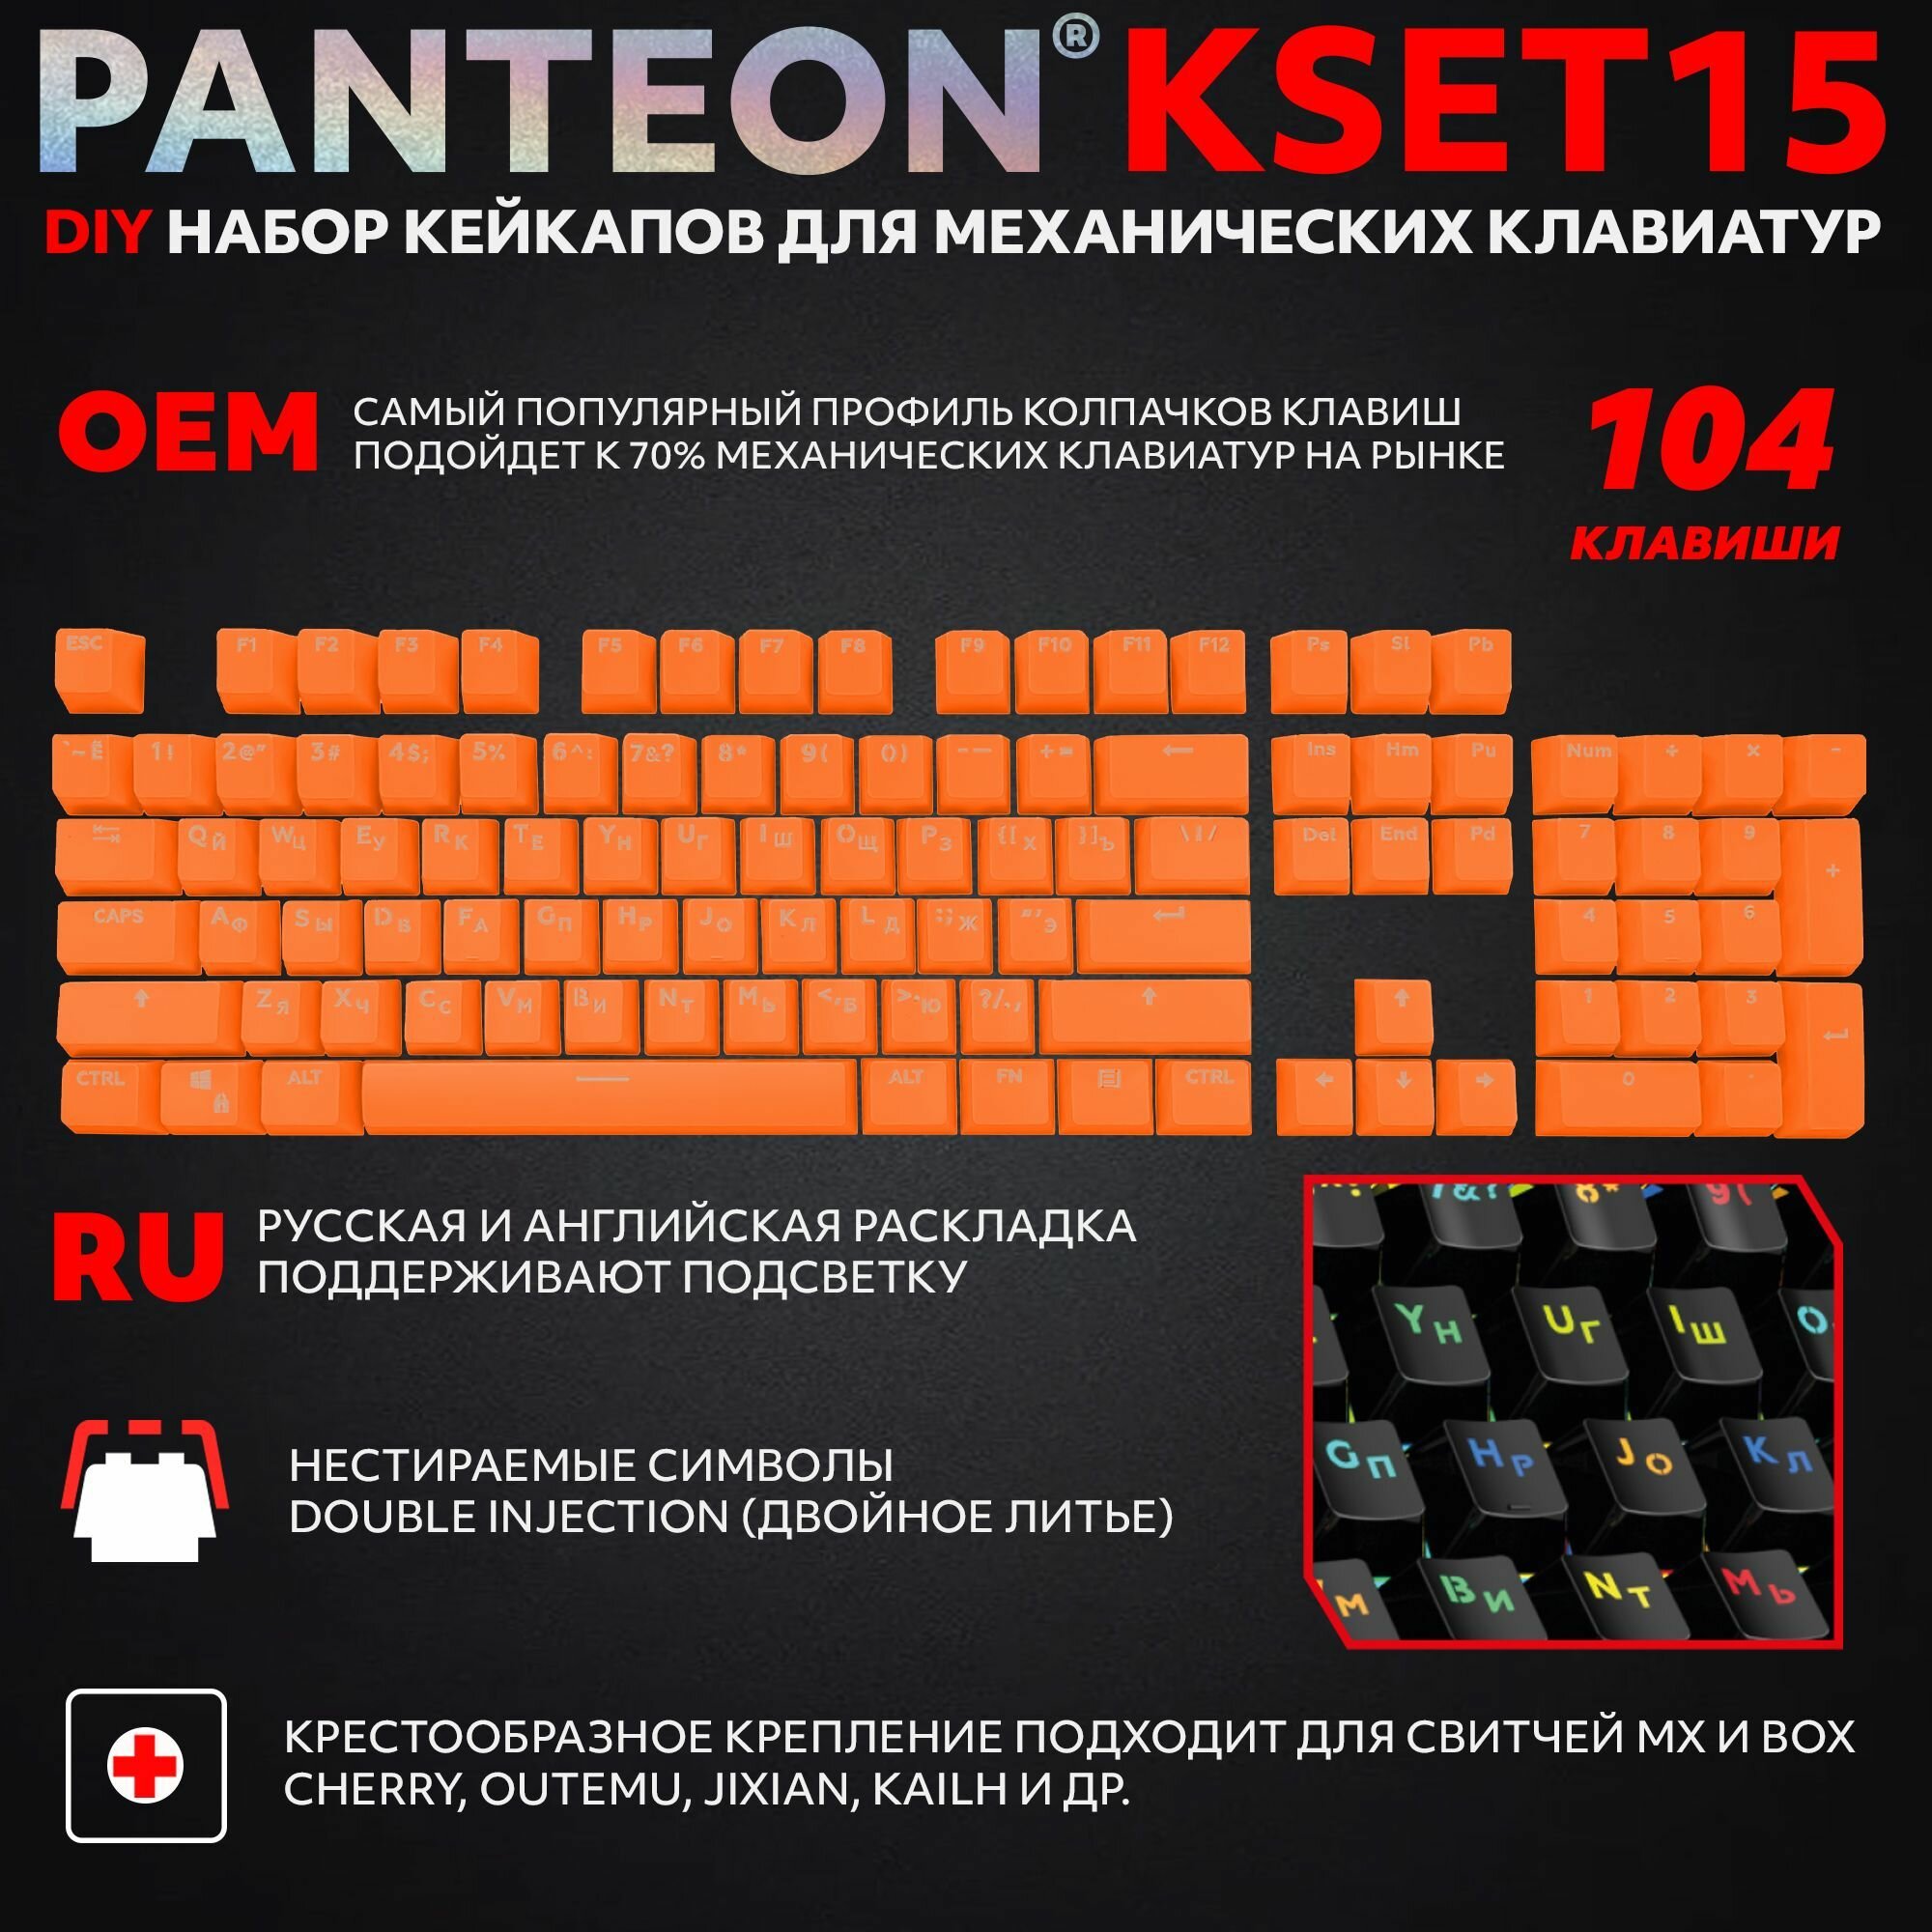 PANTEON KSET15 Yellow Универсальный набор кейкапов для механических клавиатур (104 клавиши) цвет: желтый